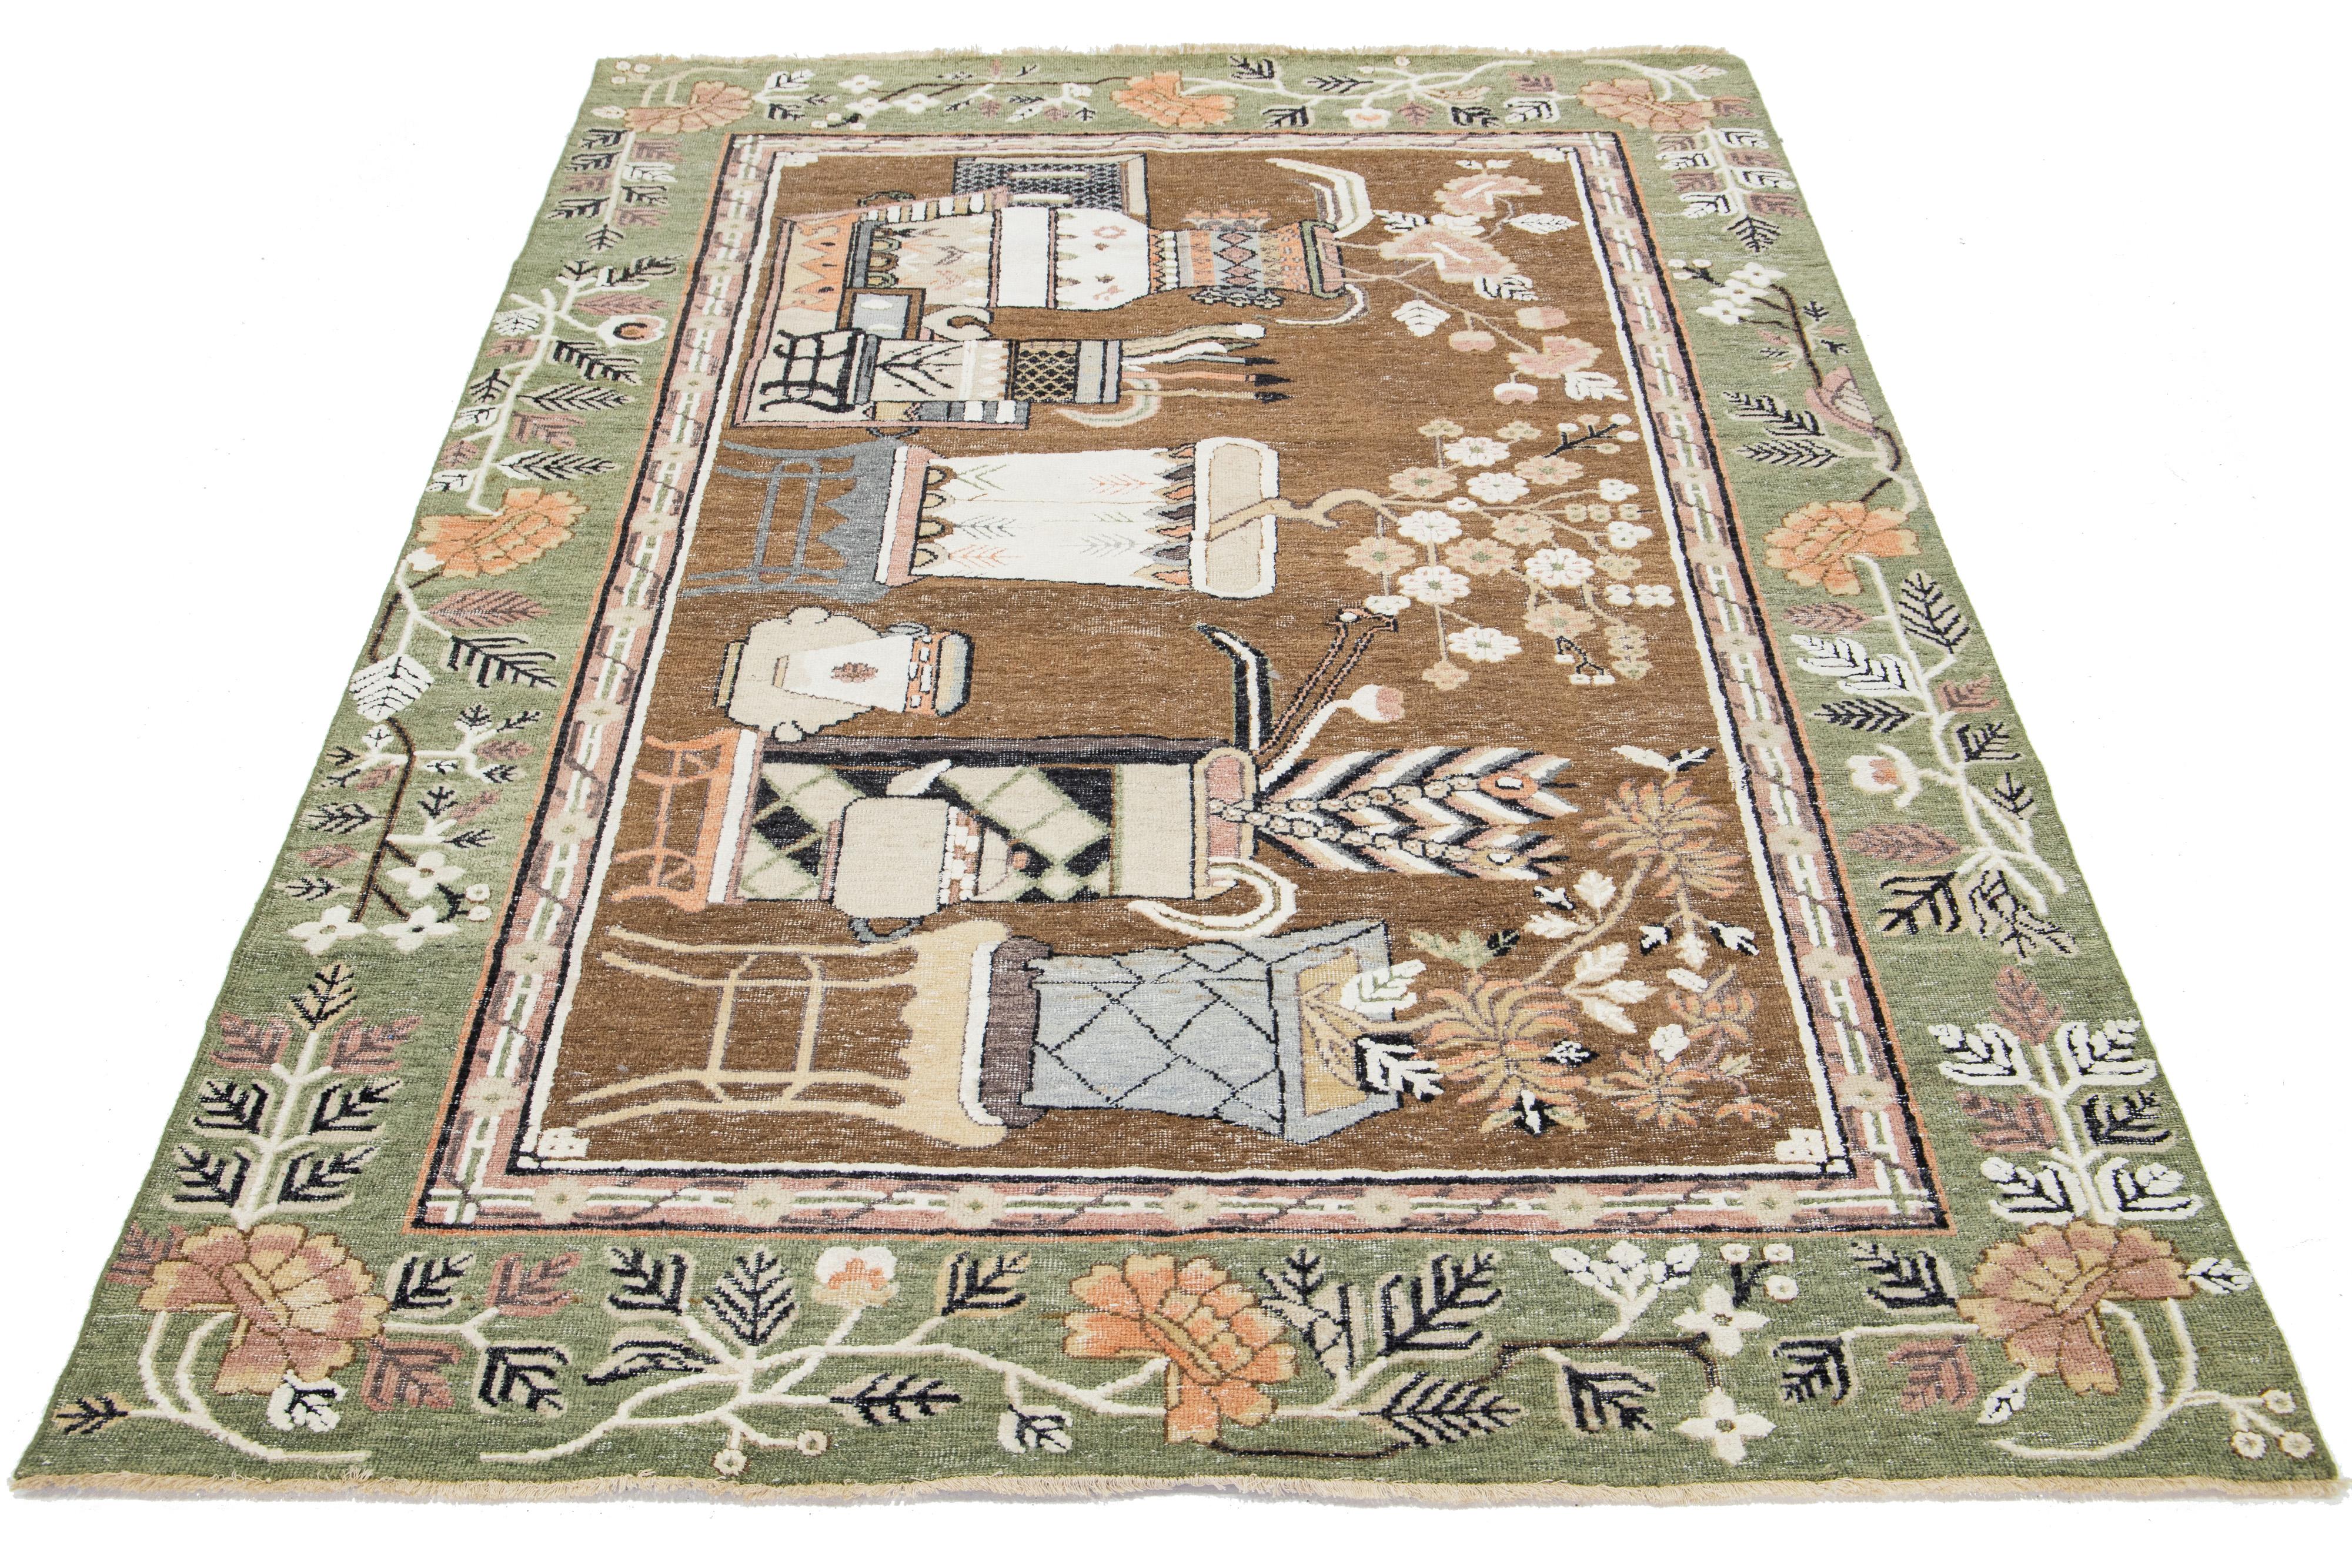 Dieser schöne moderne Samarkand-Teppich aus handgeknüpfter Wolle hat ein braunes Feld und einen grünen Rahmen. Der Teppich zeigt orange, graue und rosafarbene Akzente in einem malerischen Design.

Dieser Teppich misst 6'1